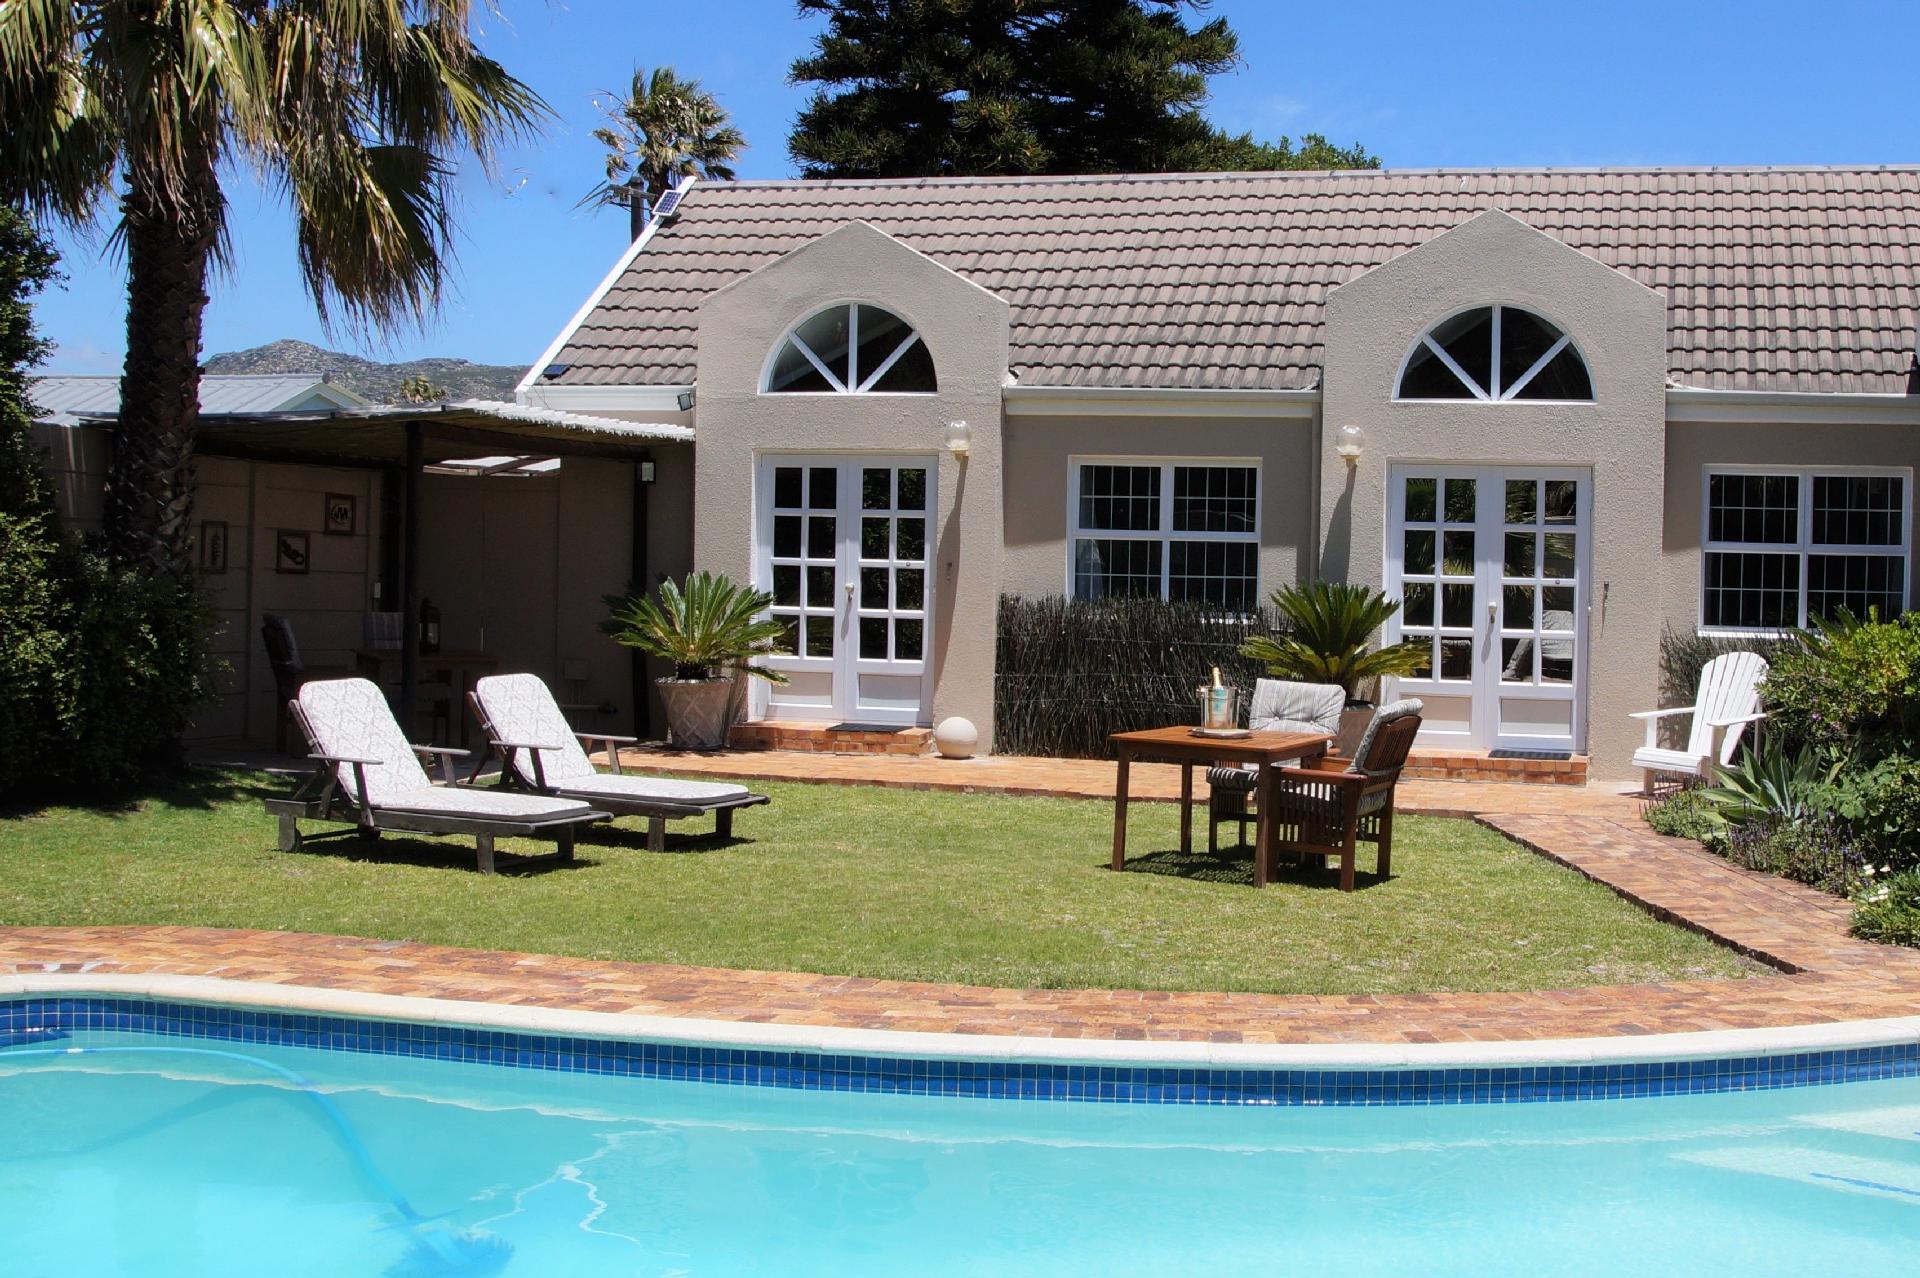 Wohnung in Sun Valley mit Sonnigem Garten  in Südafrika